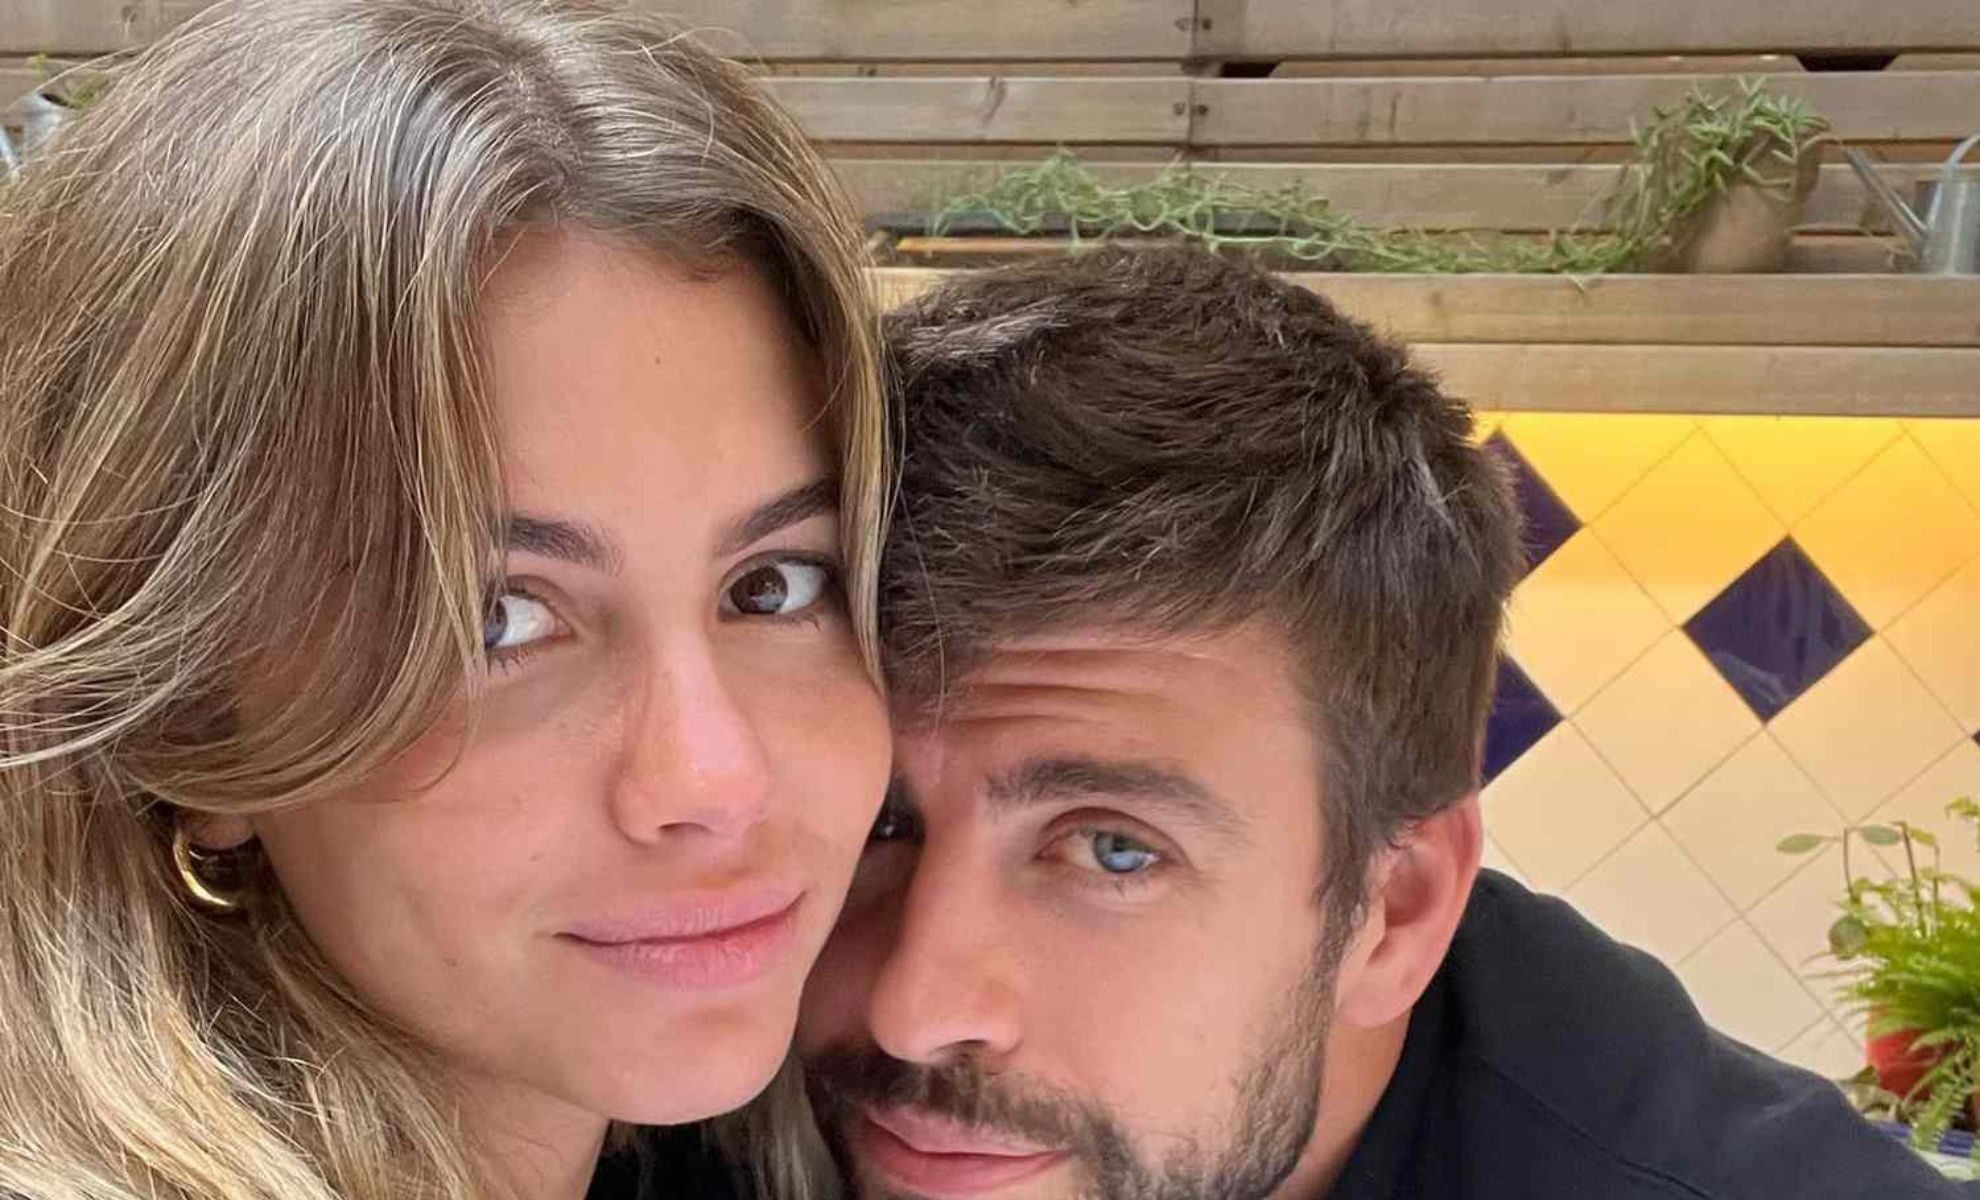 Clara Chia La Nouvelle Petite Amie De L'ex De Shakira Admise En Urgence à L'hôpital